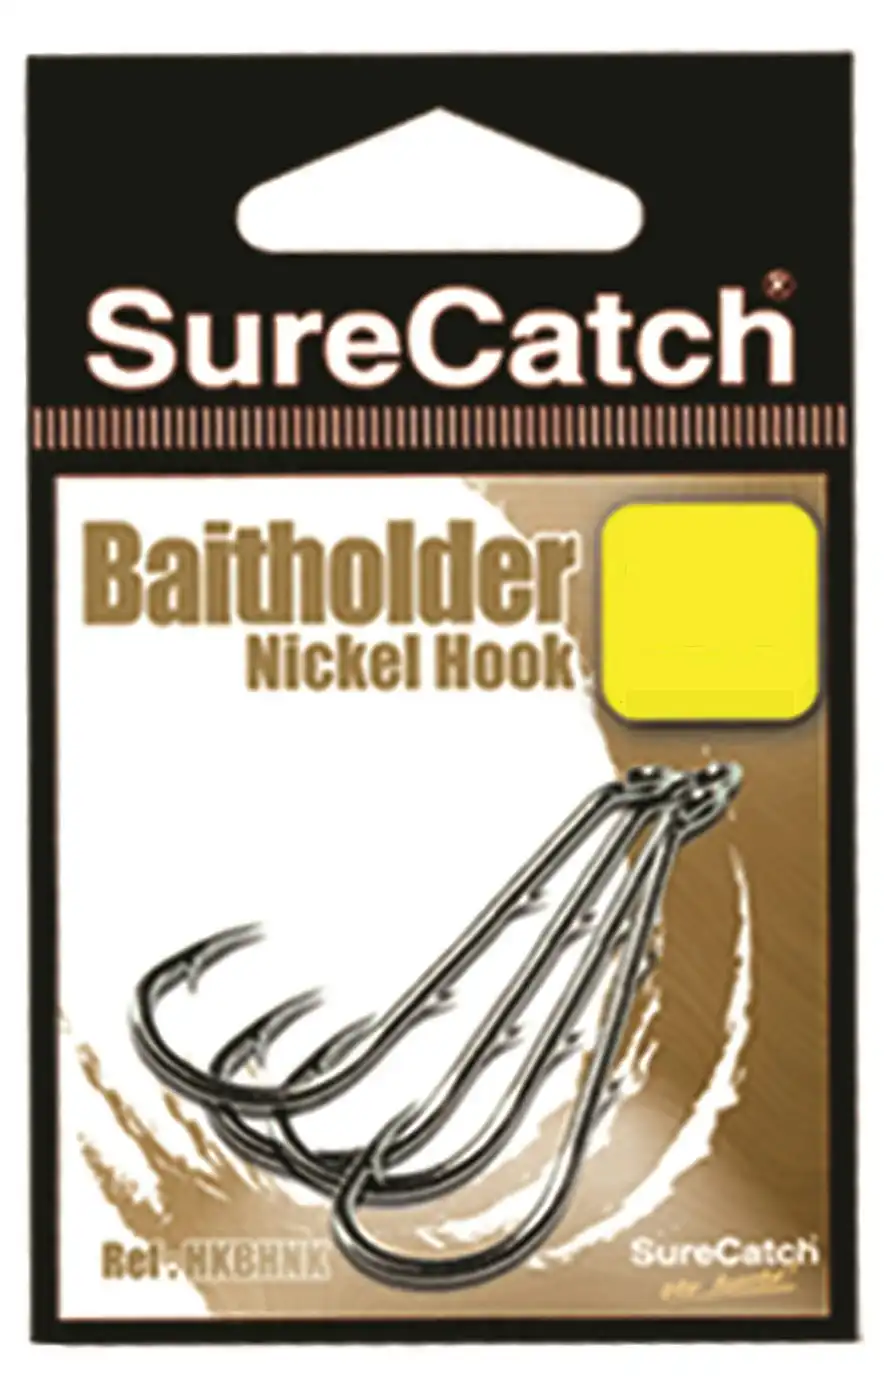 1 Packet of Surecatch Nickle Baitholder Fishing Hooks